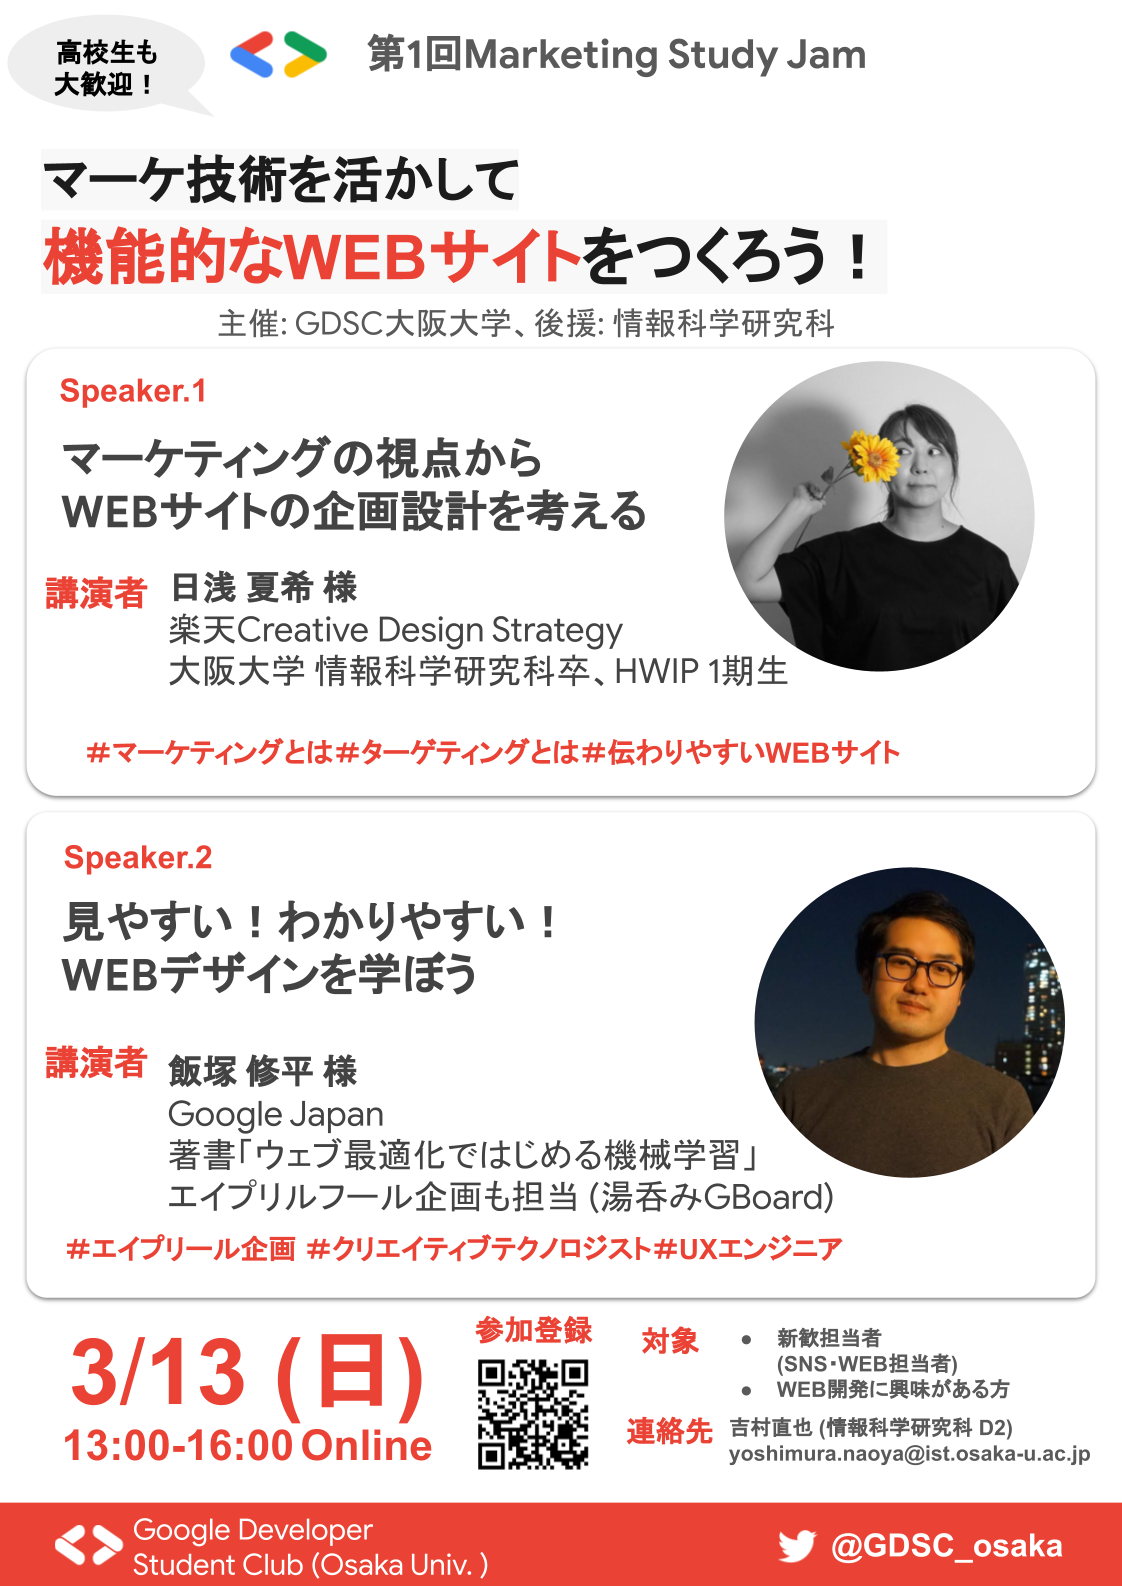 3月13日開催　GDSC 大阪大学支部主催 第1回 Marketing Study Jam